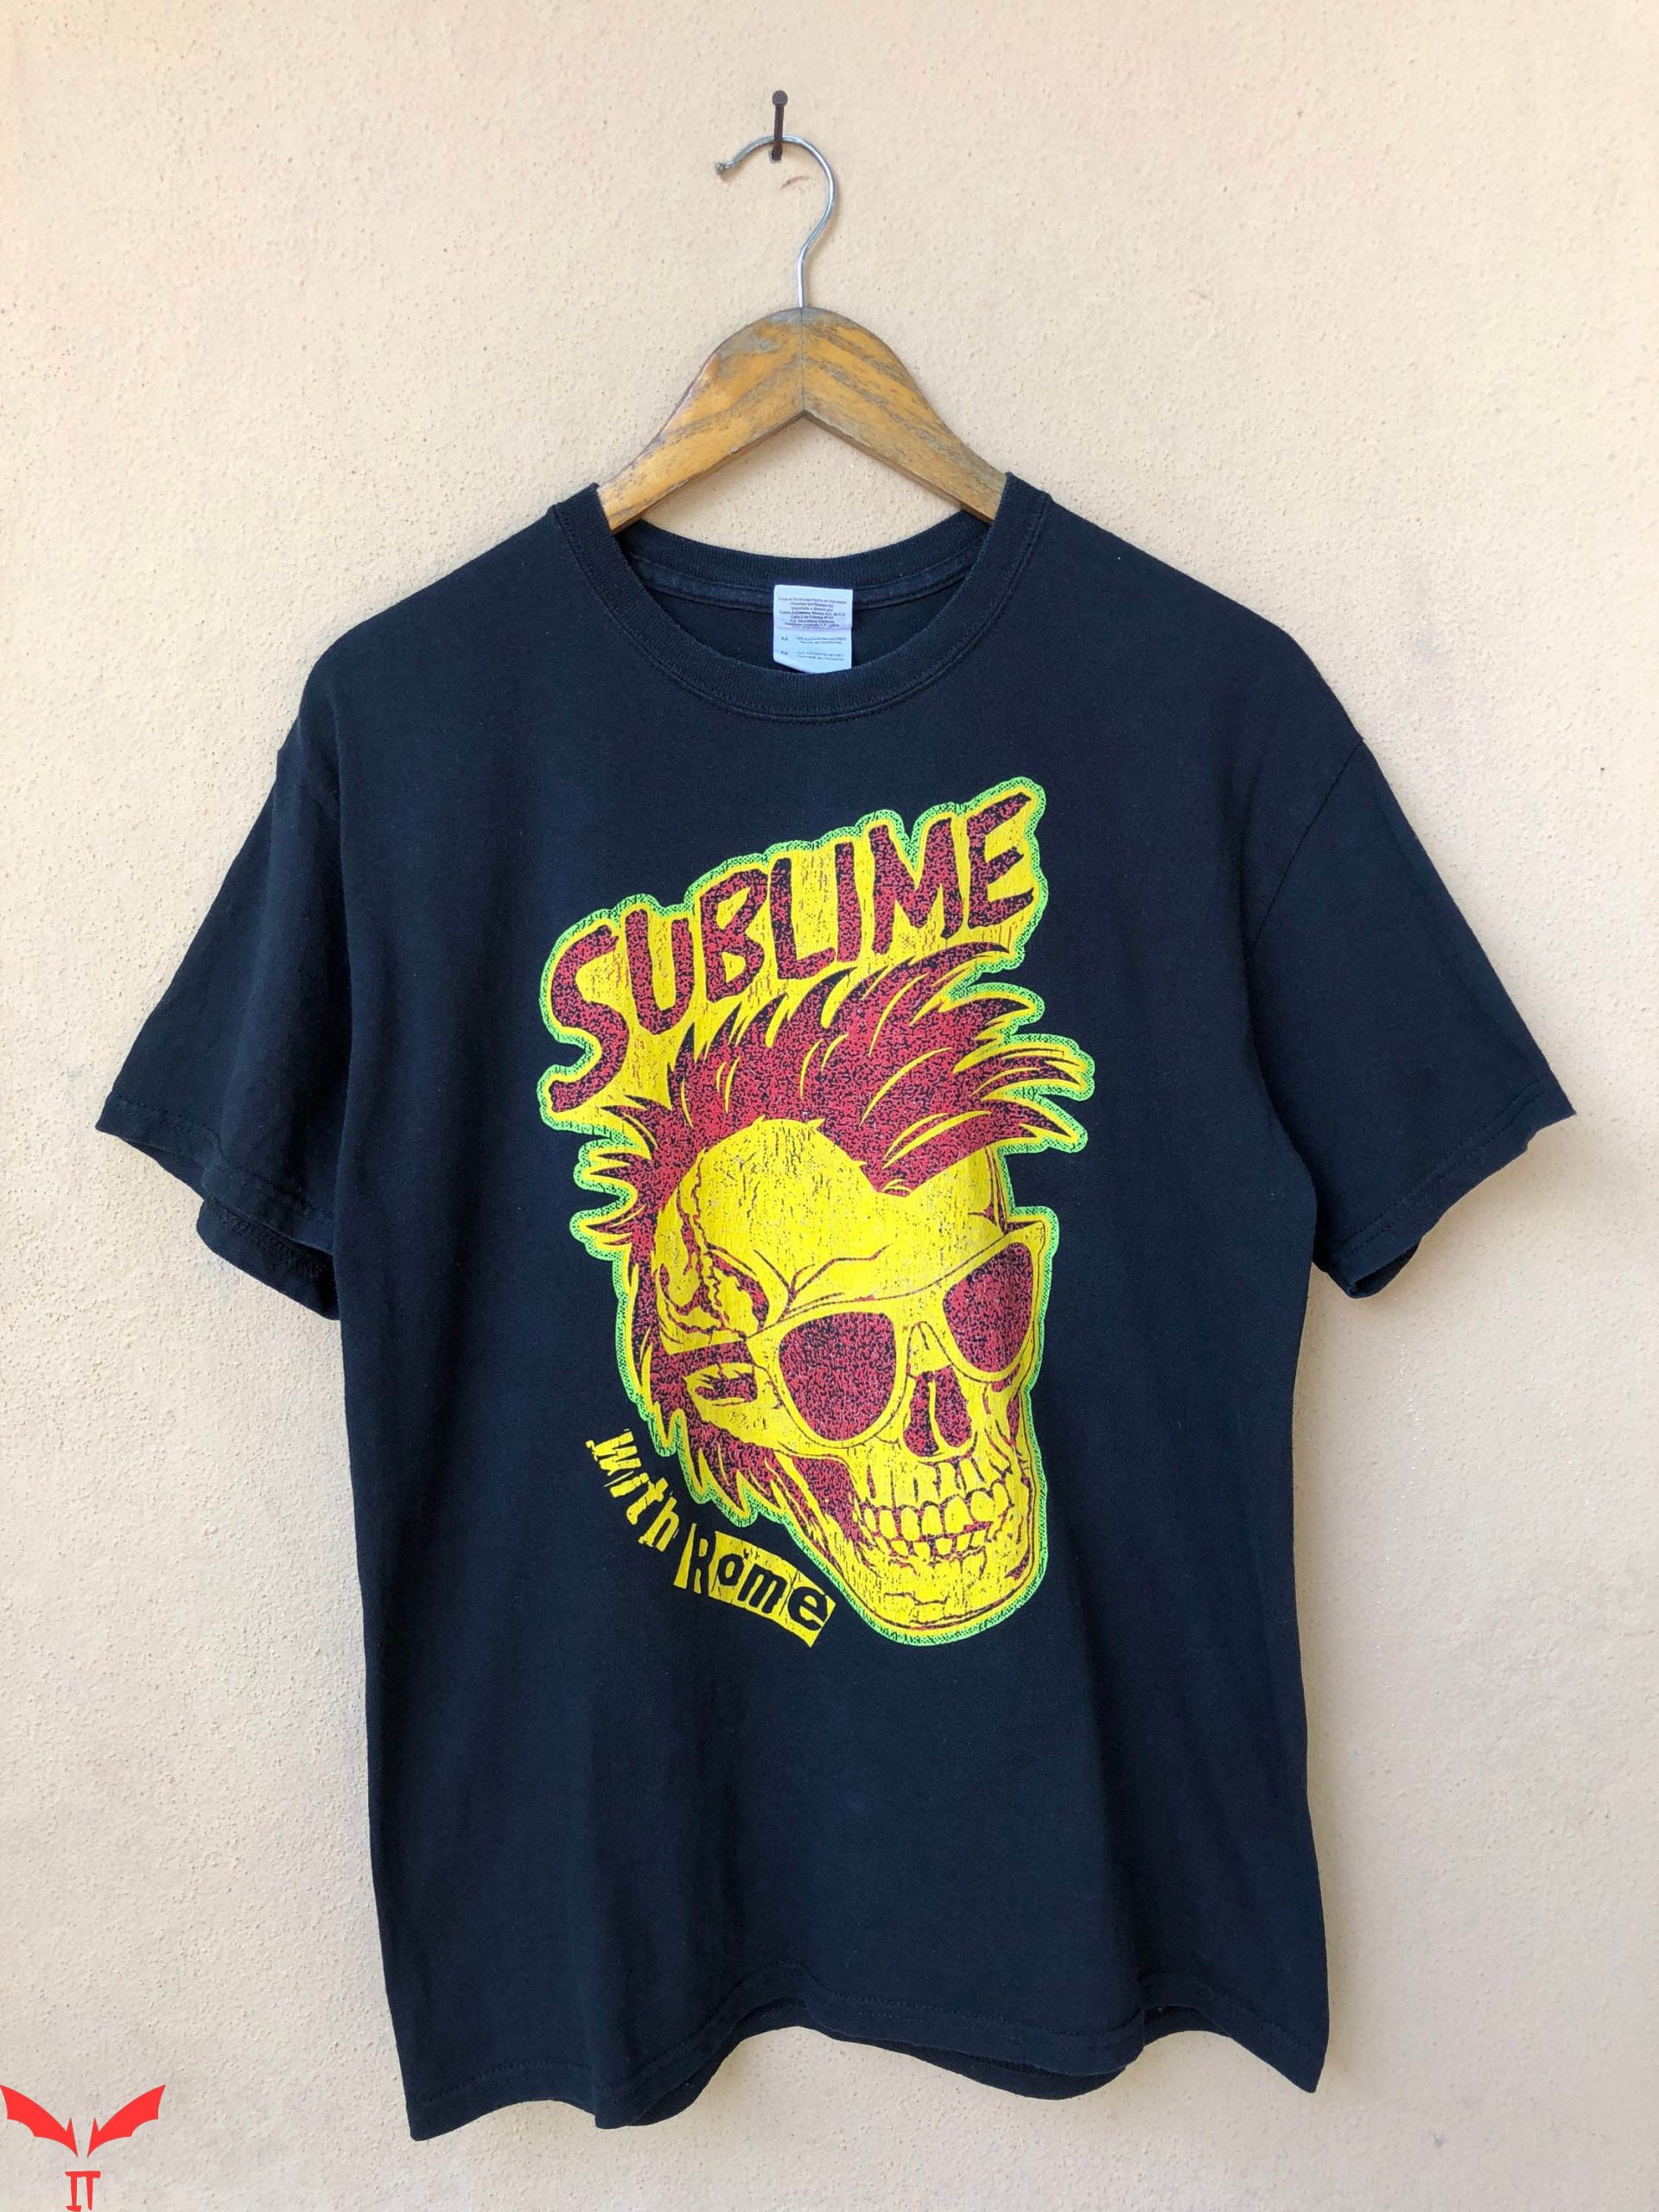 Vintage Sublime T-Shirt Sublime With Rome World Tour Trendy